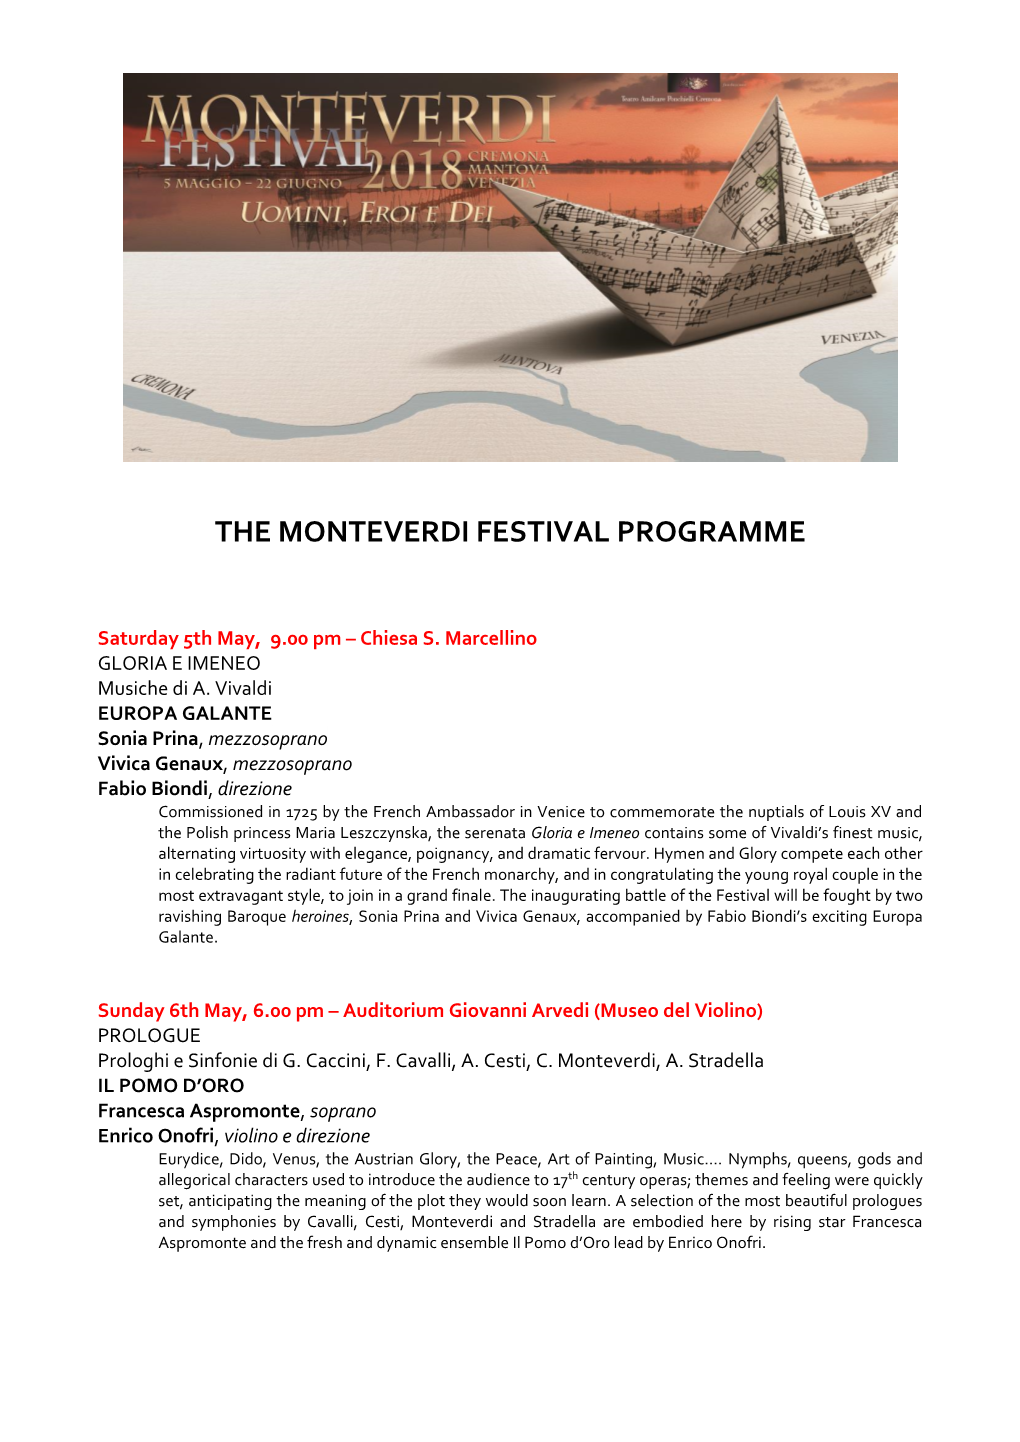 The Monteverdi Festival Programme